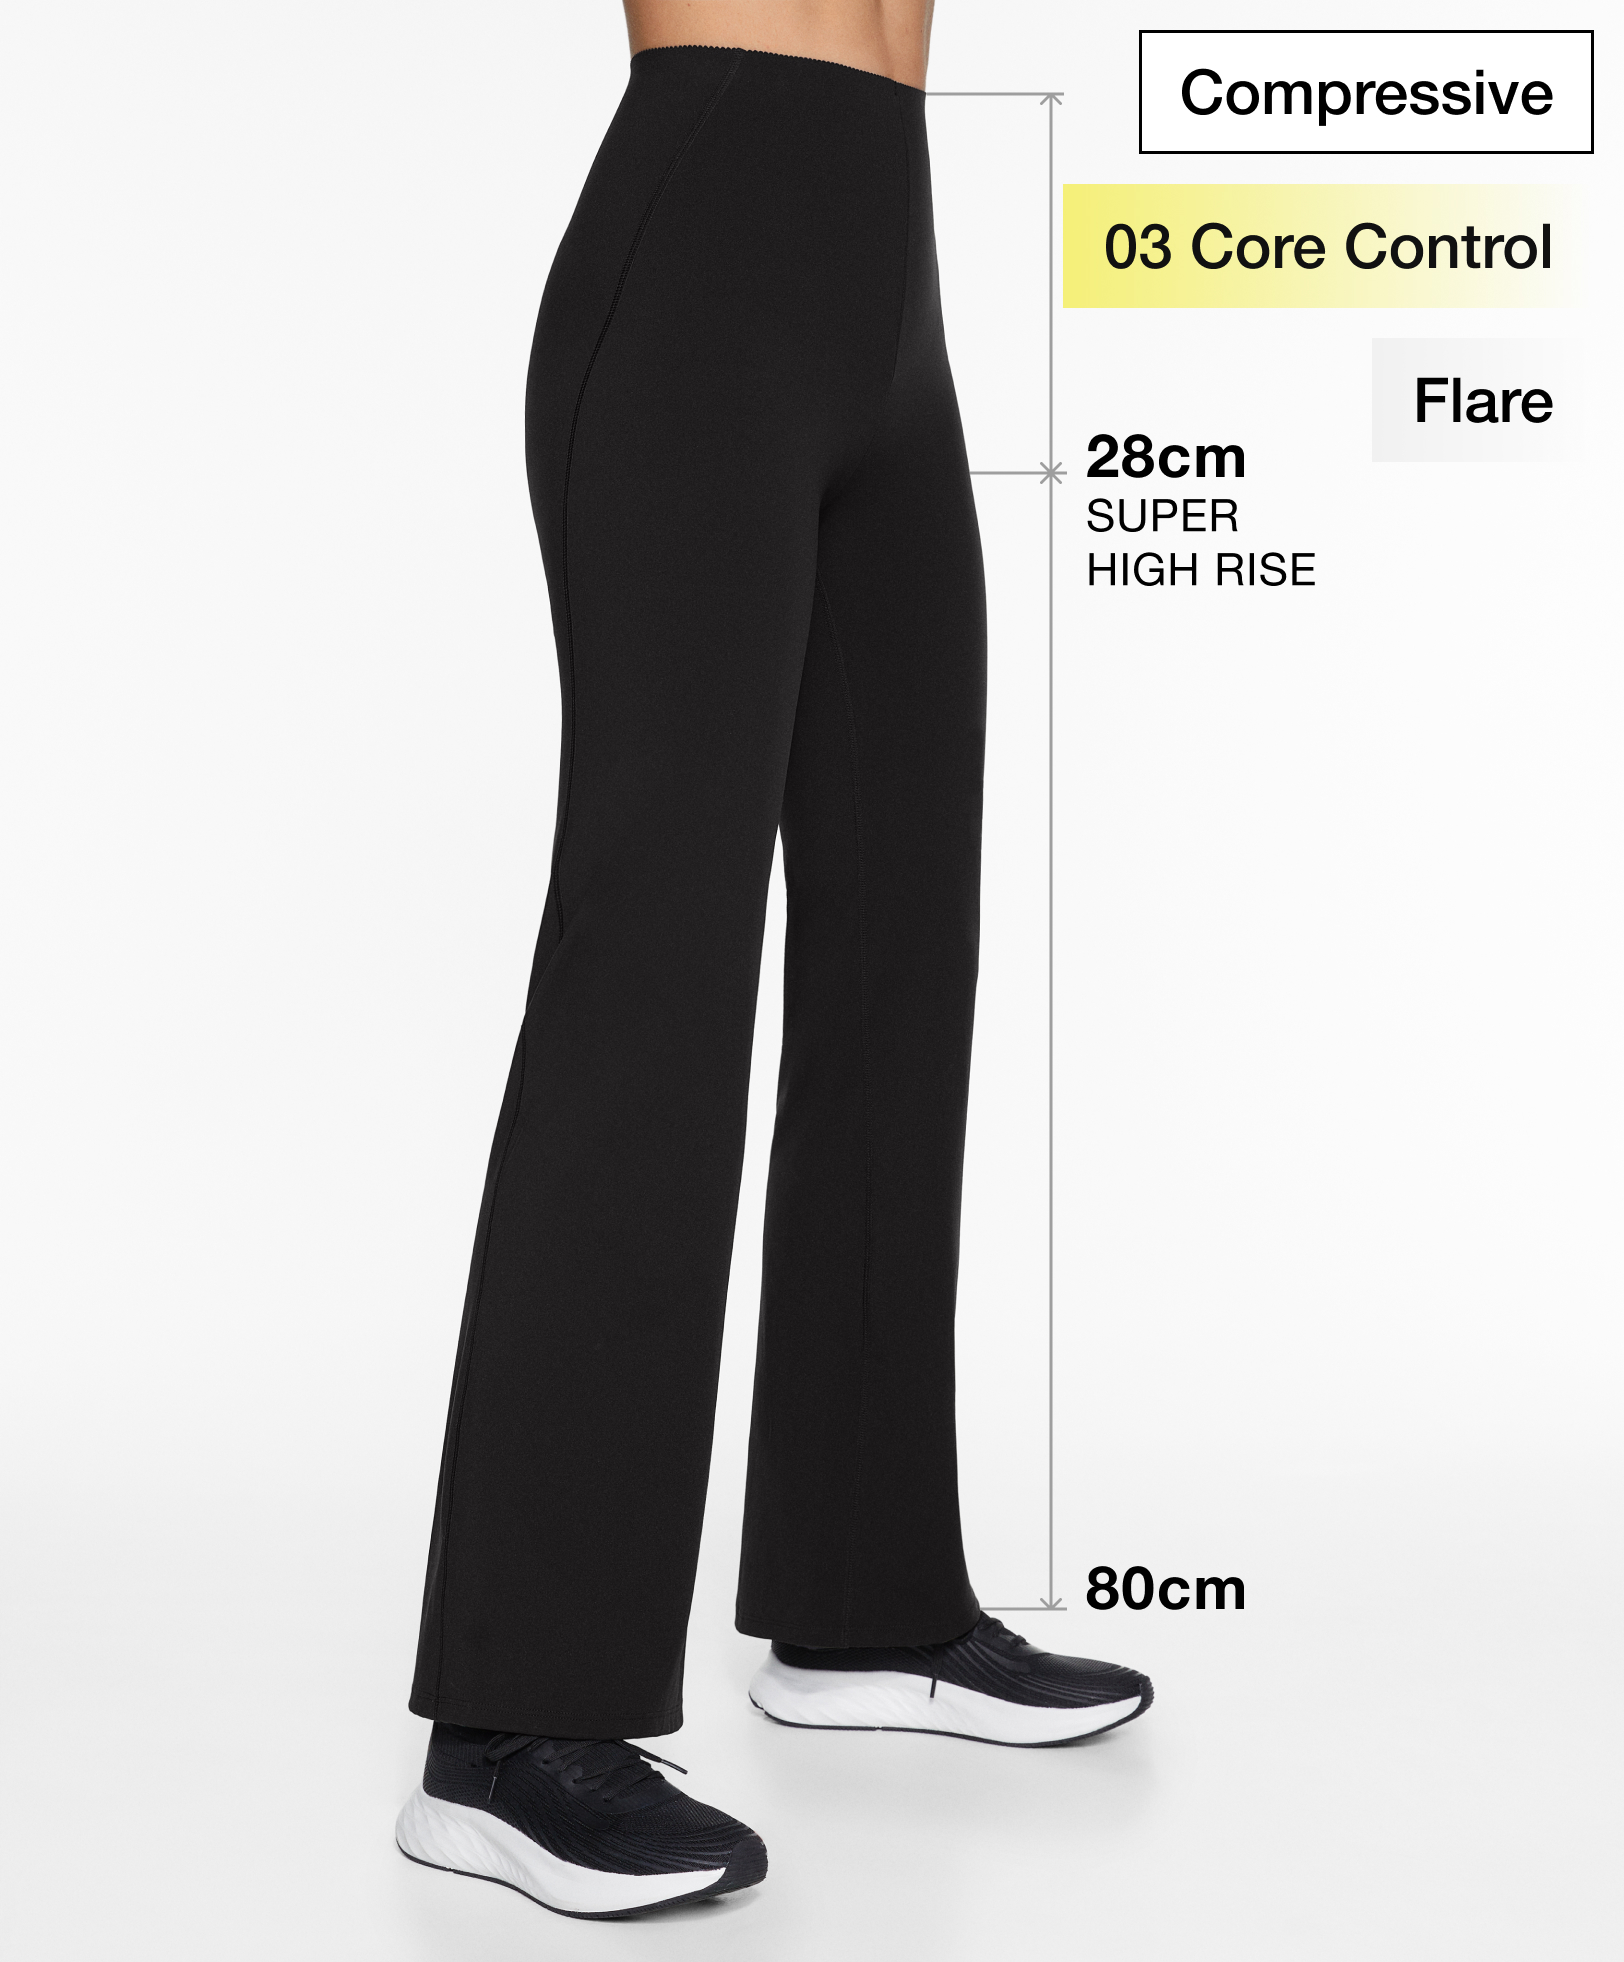 Pantaloni flare super high rise Compressive Core Control